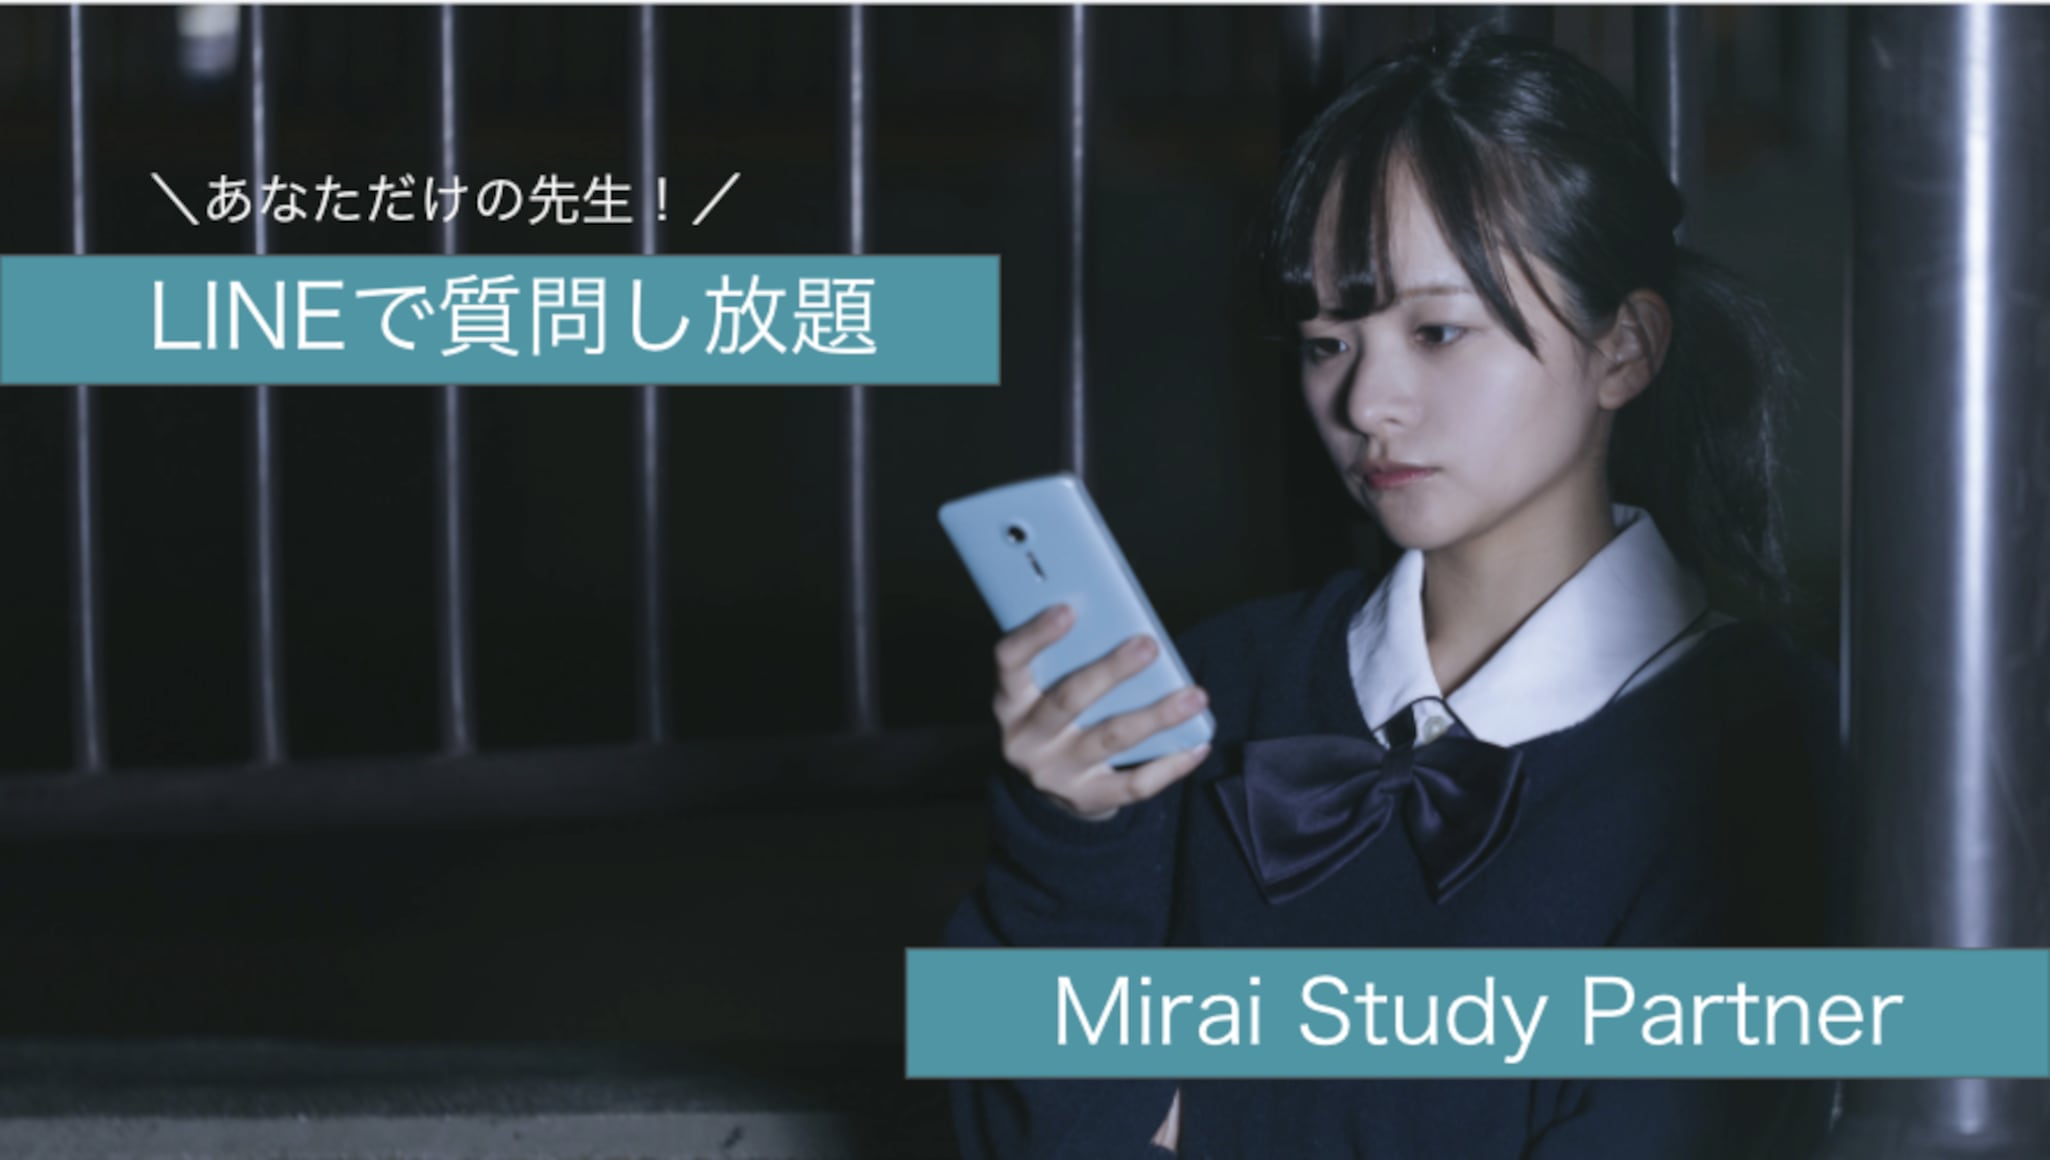 Mirai Study Partner